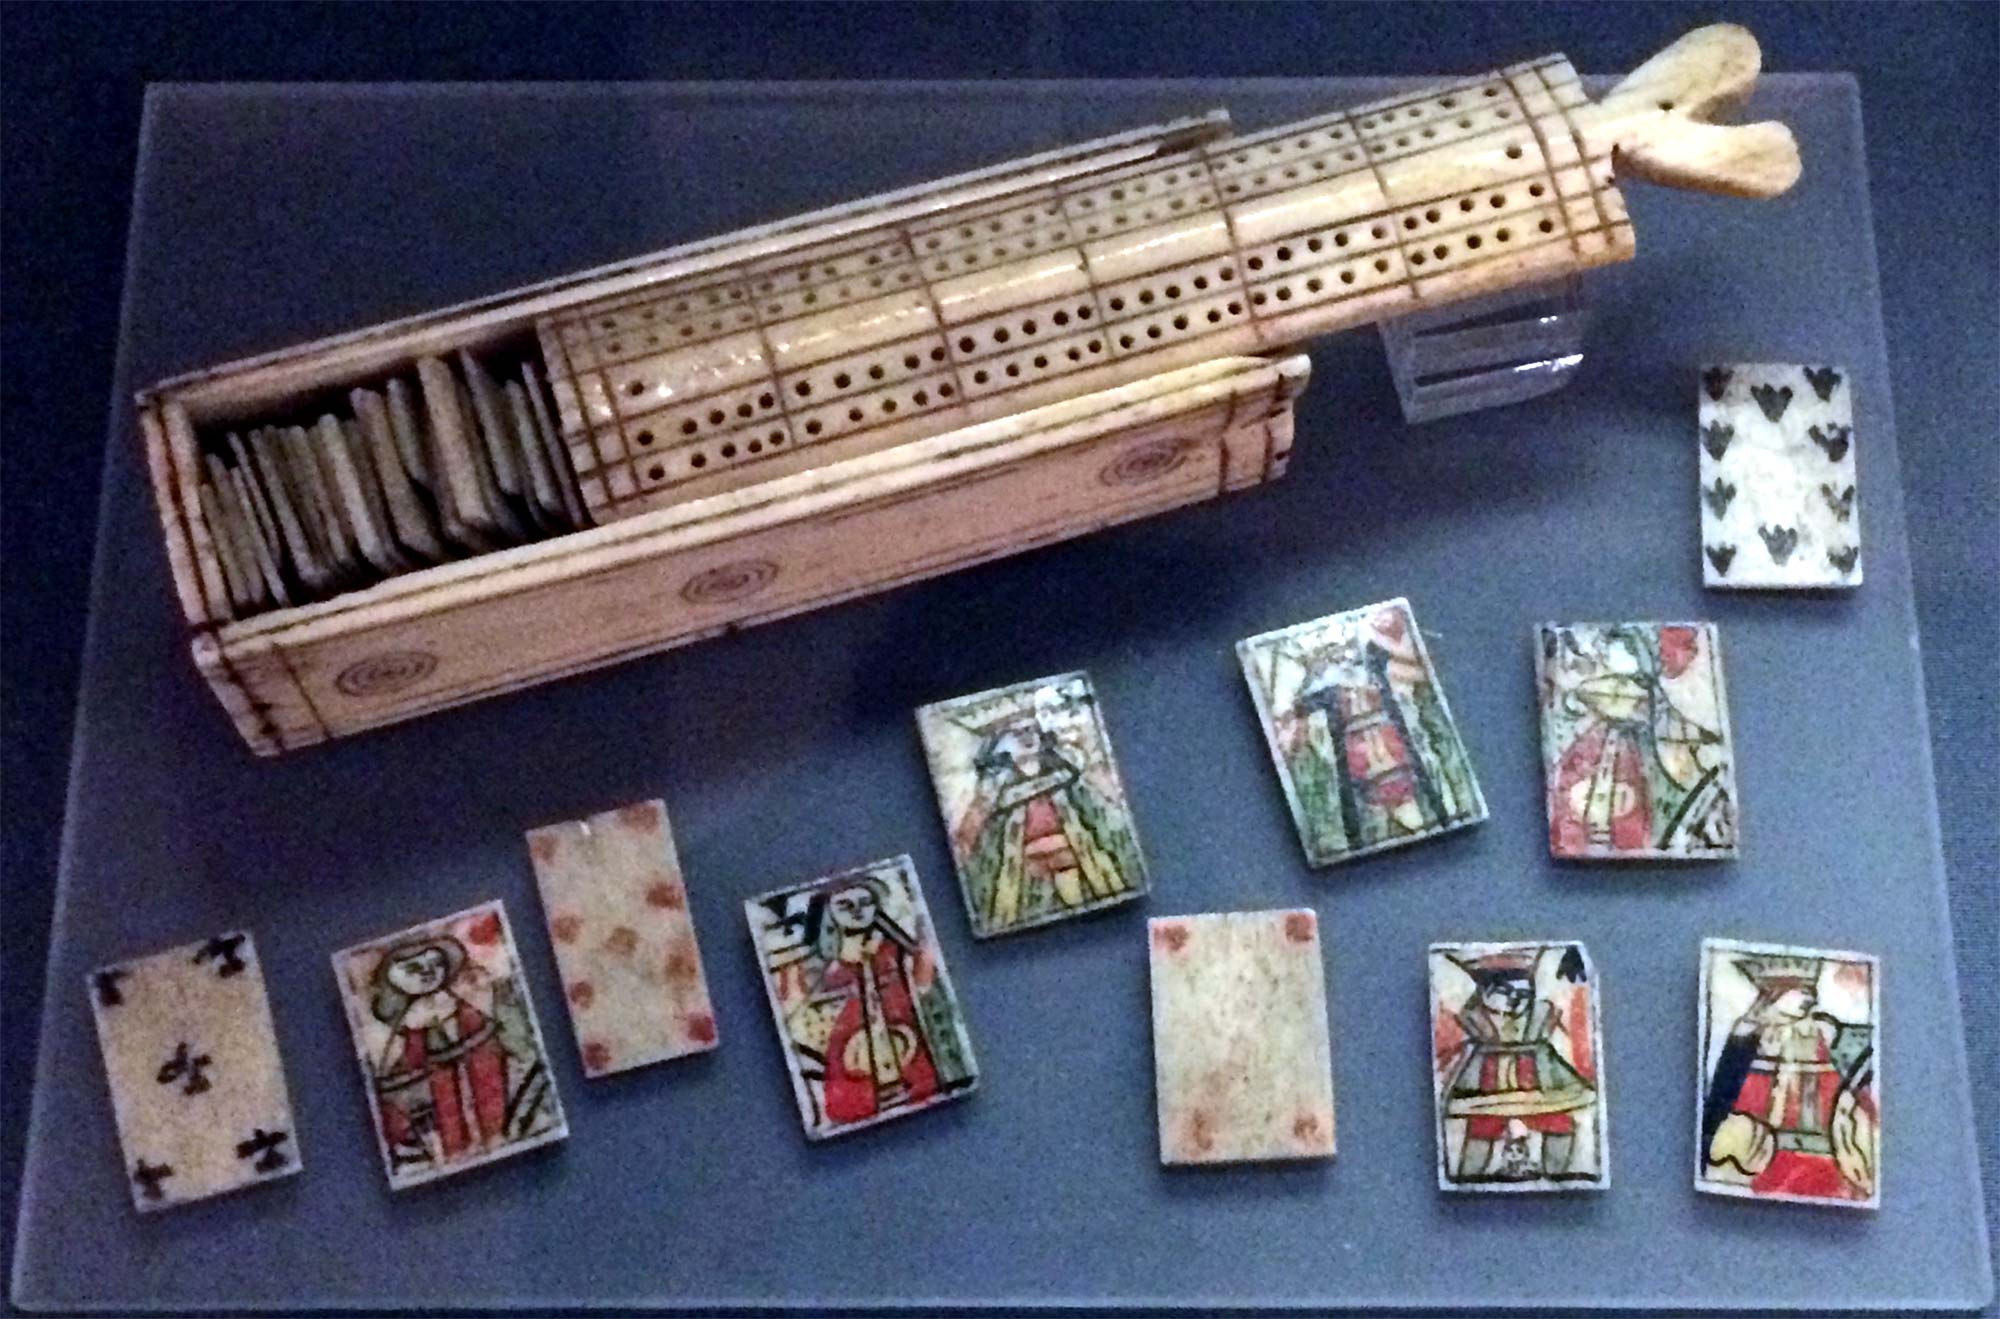 Bone card set in case, c.1810-1814